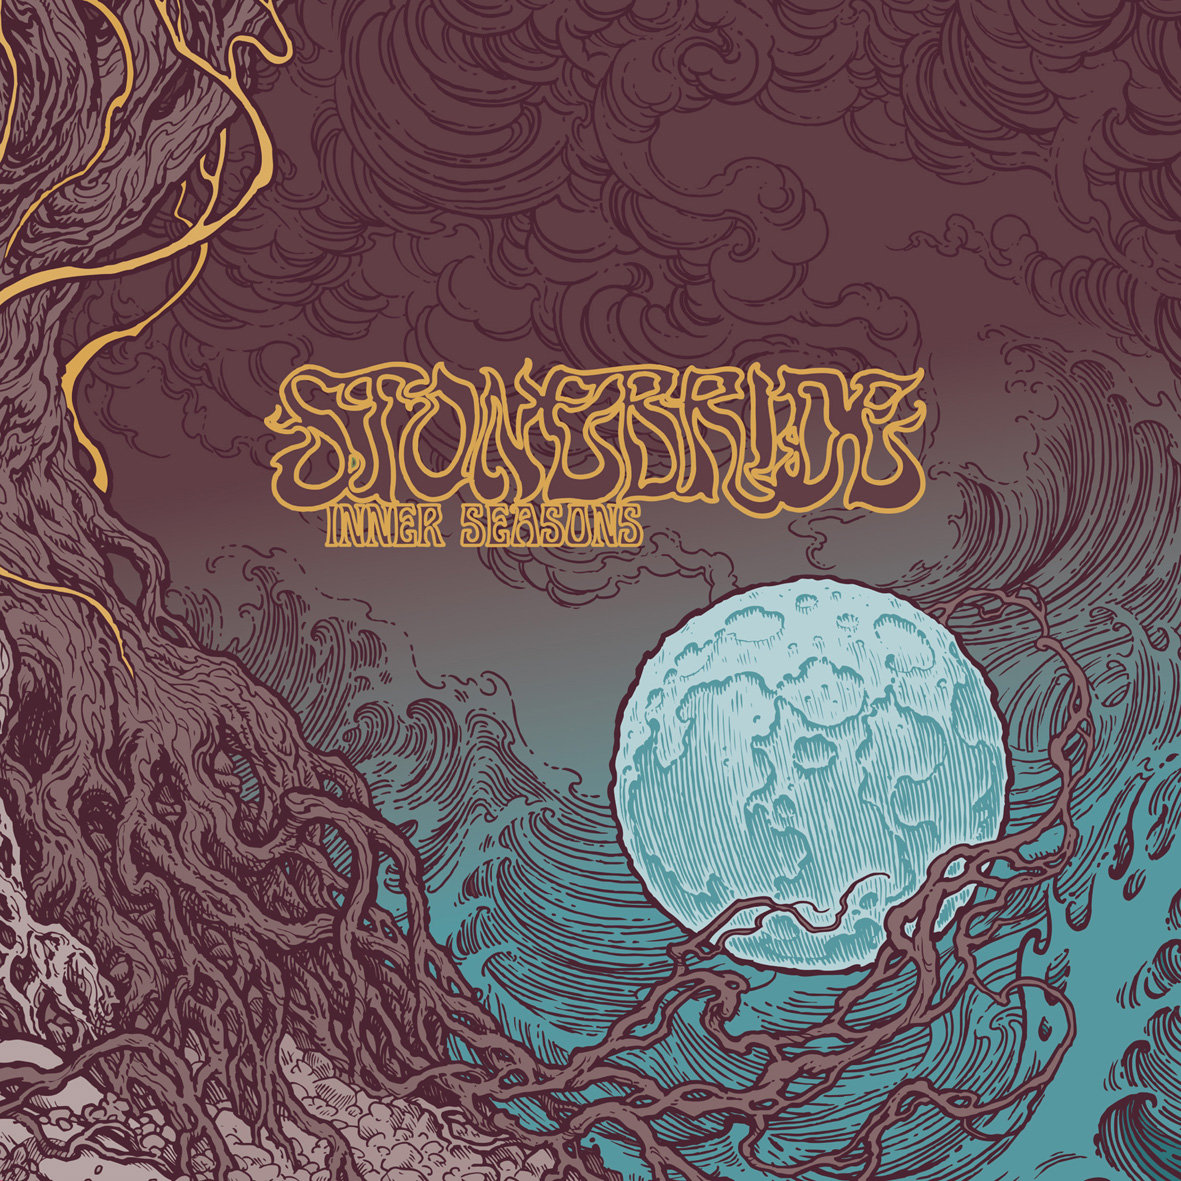 Stonebride - Inner Seasons - LP